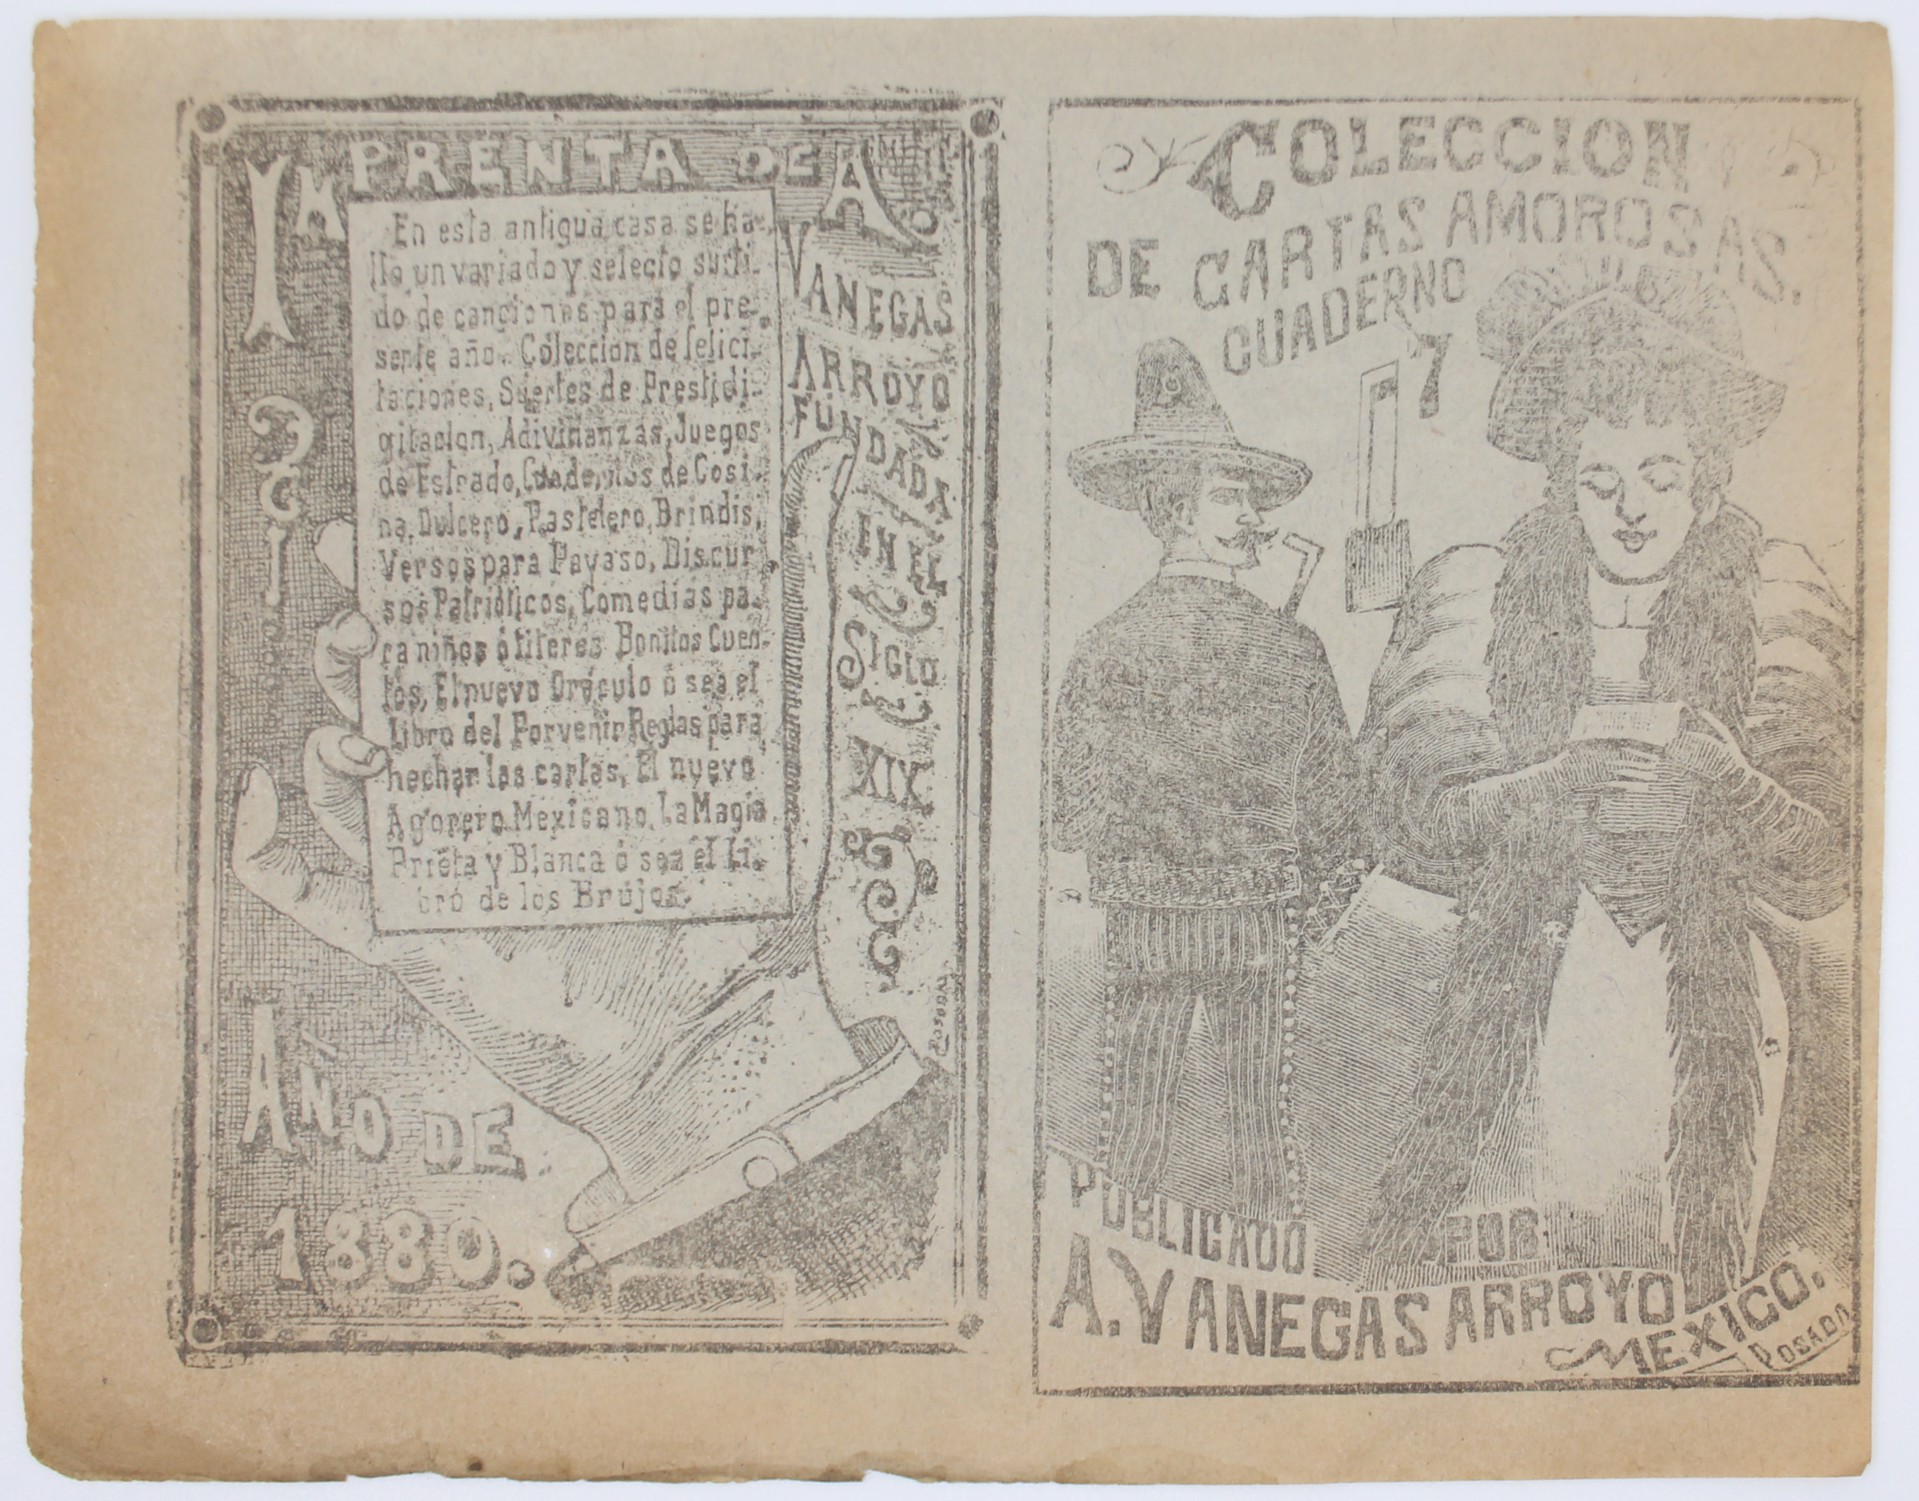  Colección de Cartas Amorosas Cuaderno 7 by José Guadalupe Posada